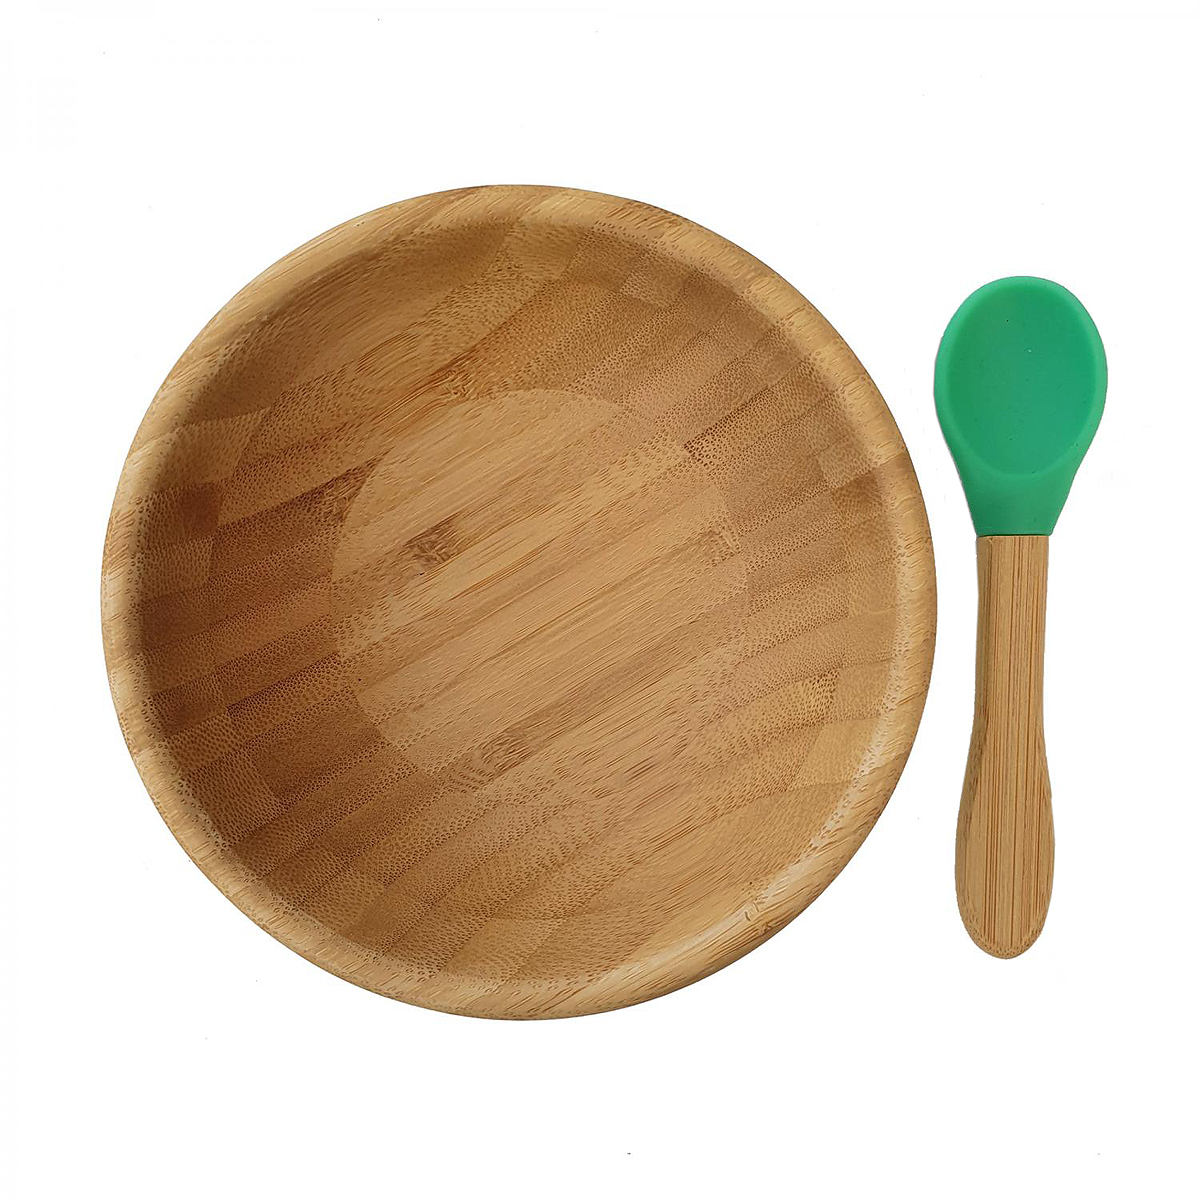 Matset för barn skål tallrik med sugfot av silikon och sked av bambu med ätdel av silikon, träfärgad och grön, Summerville Organic